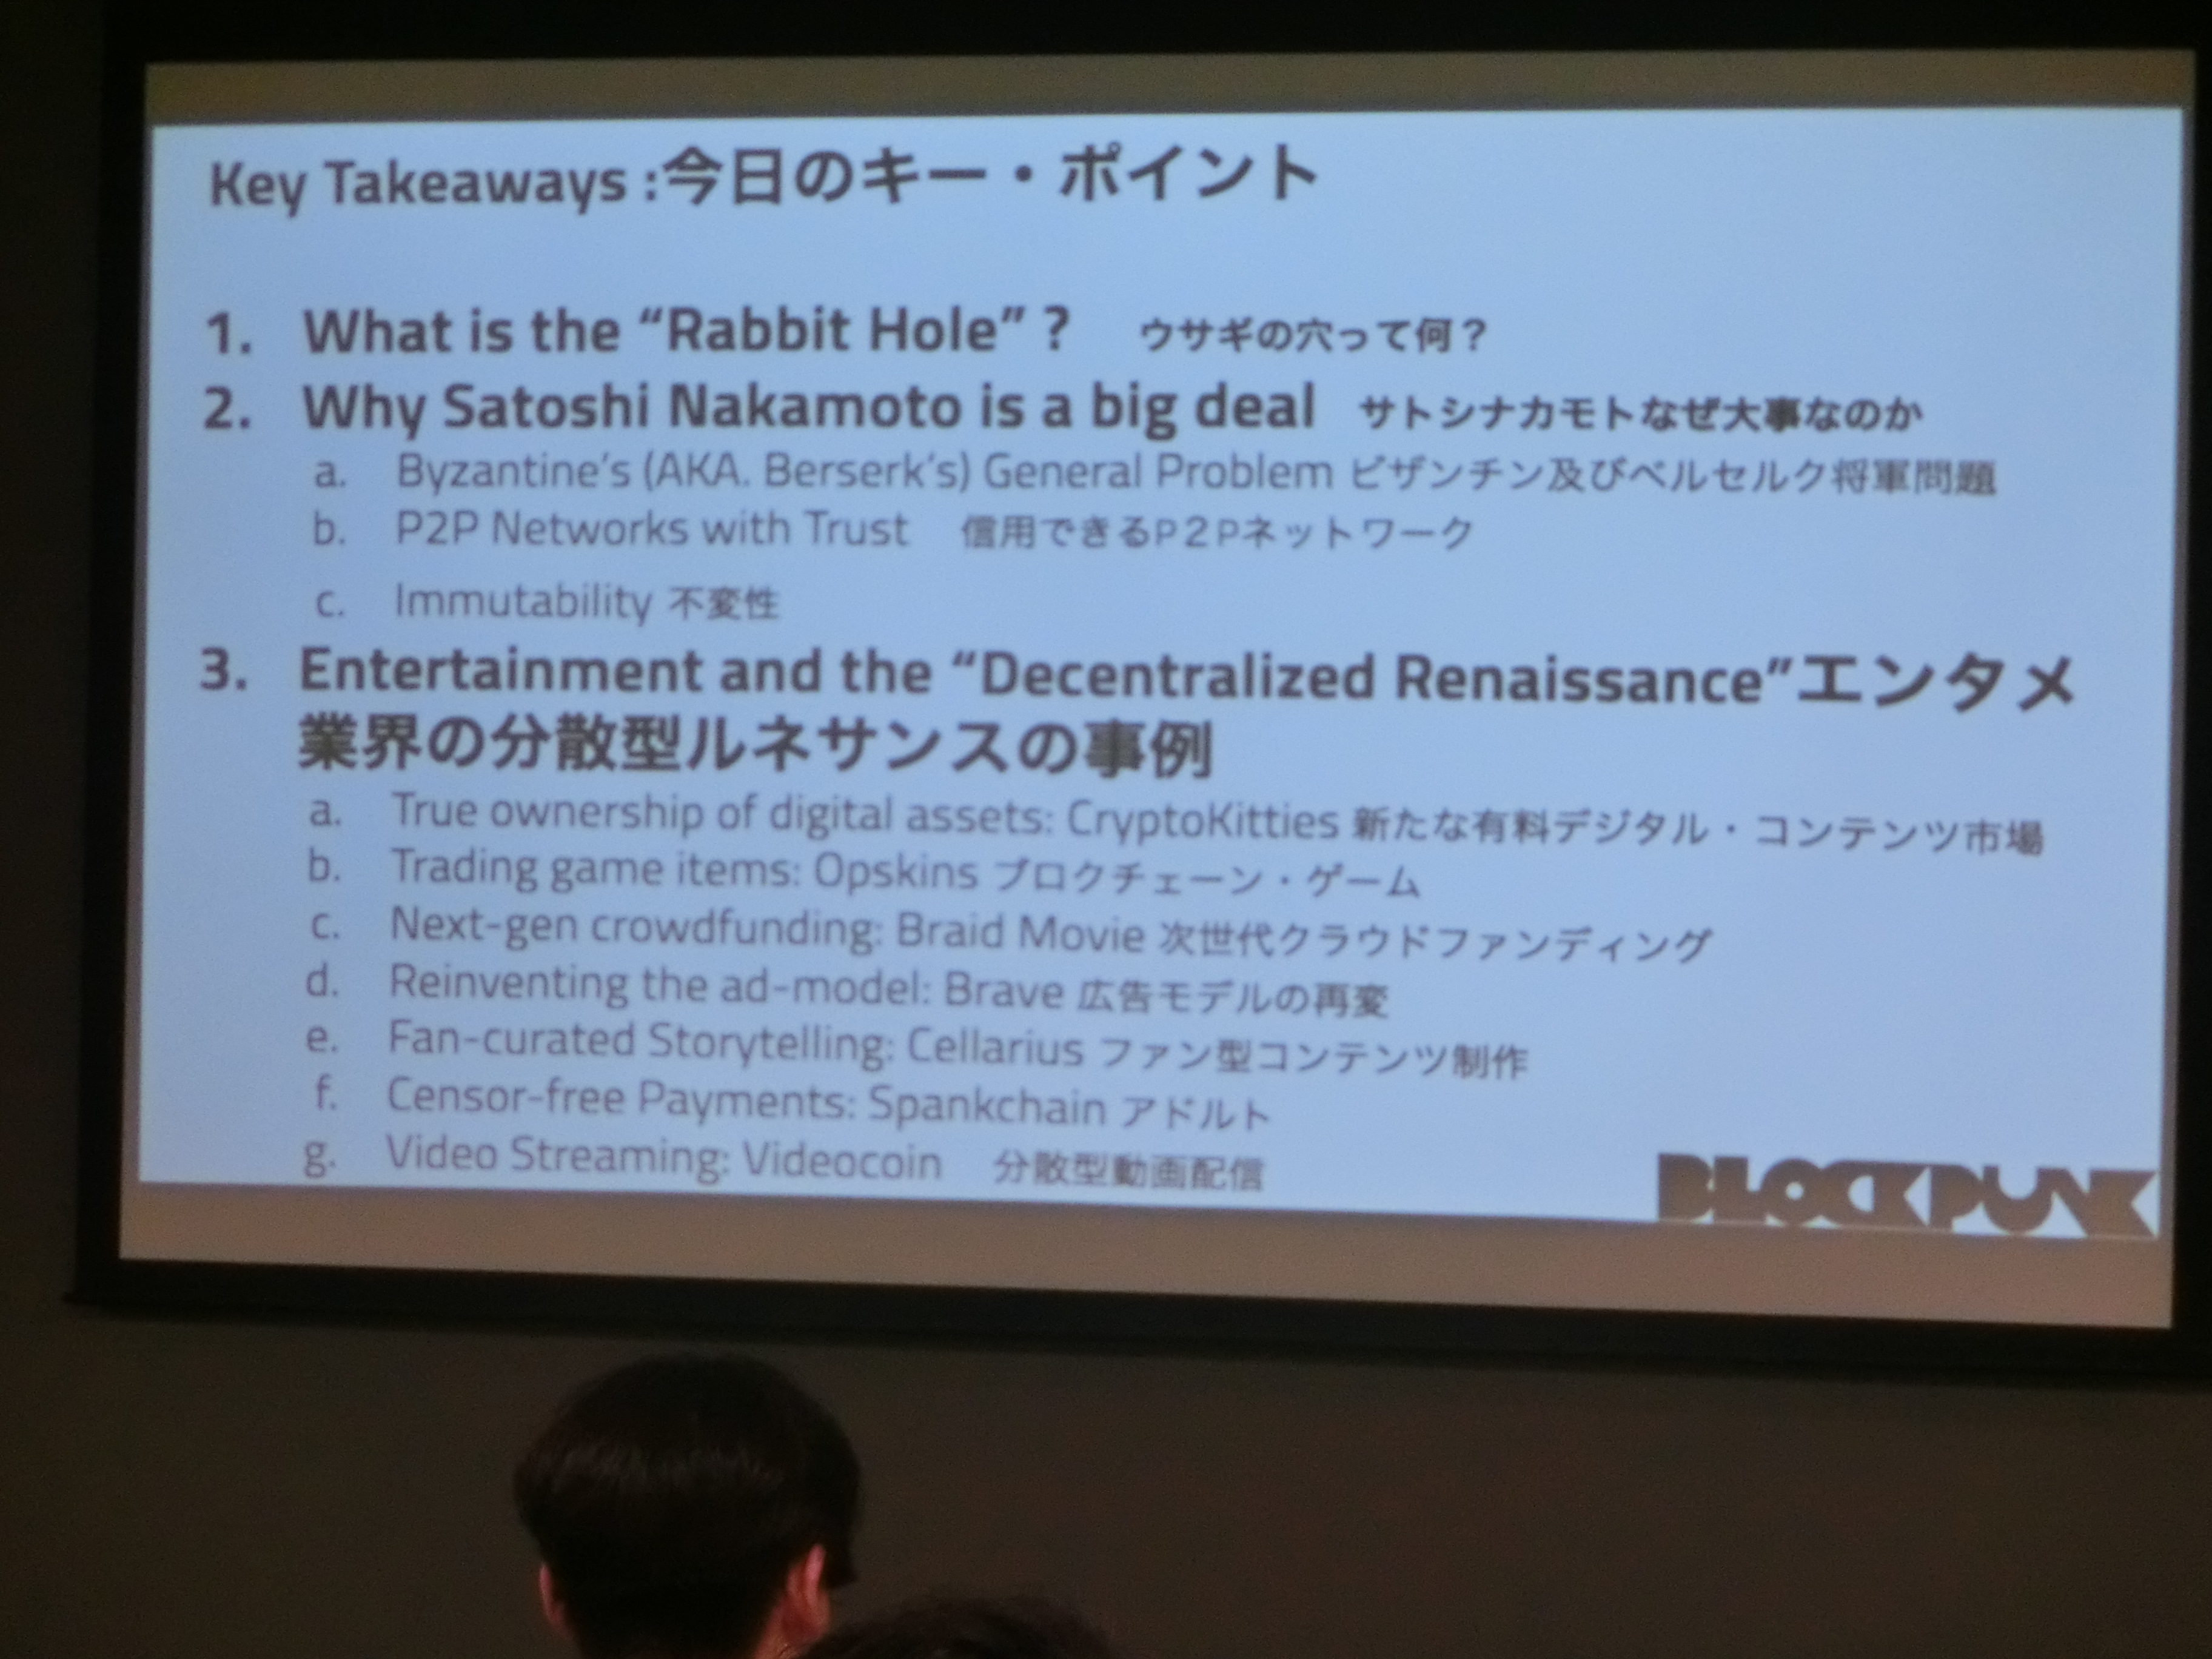 【イベントレポート】エンタテインメント x ブロックチェーンをテーマに様々なプレイヤーが交流をする『EnterTech Meet Up』が開催されました。(前半)